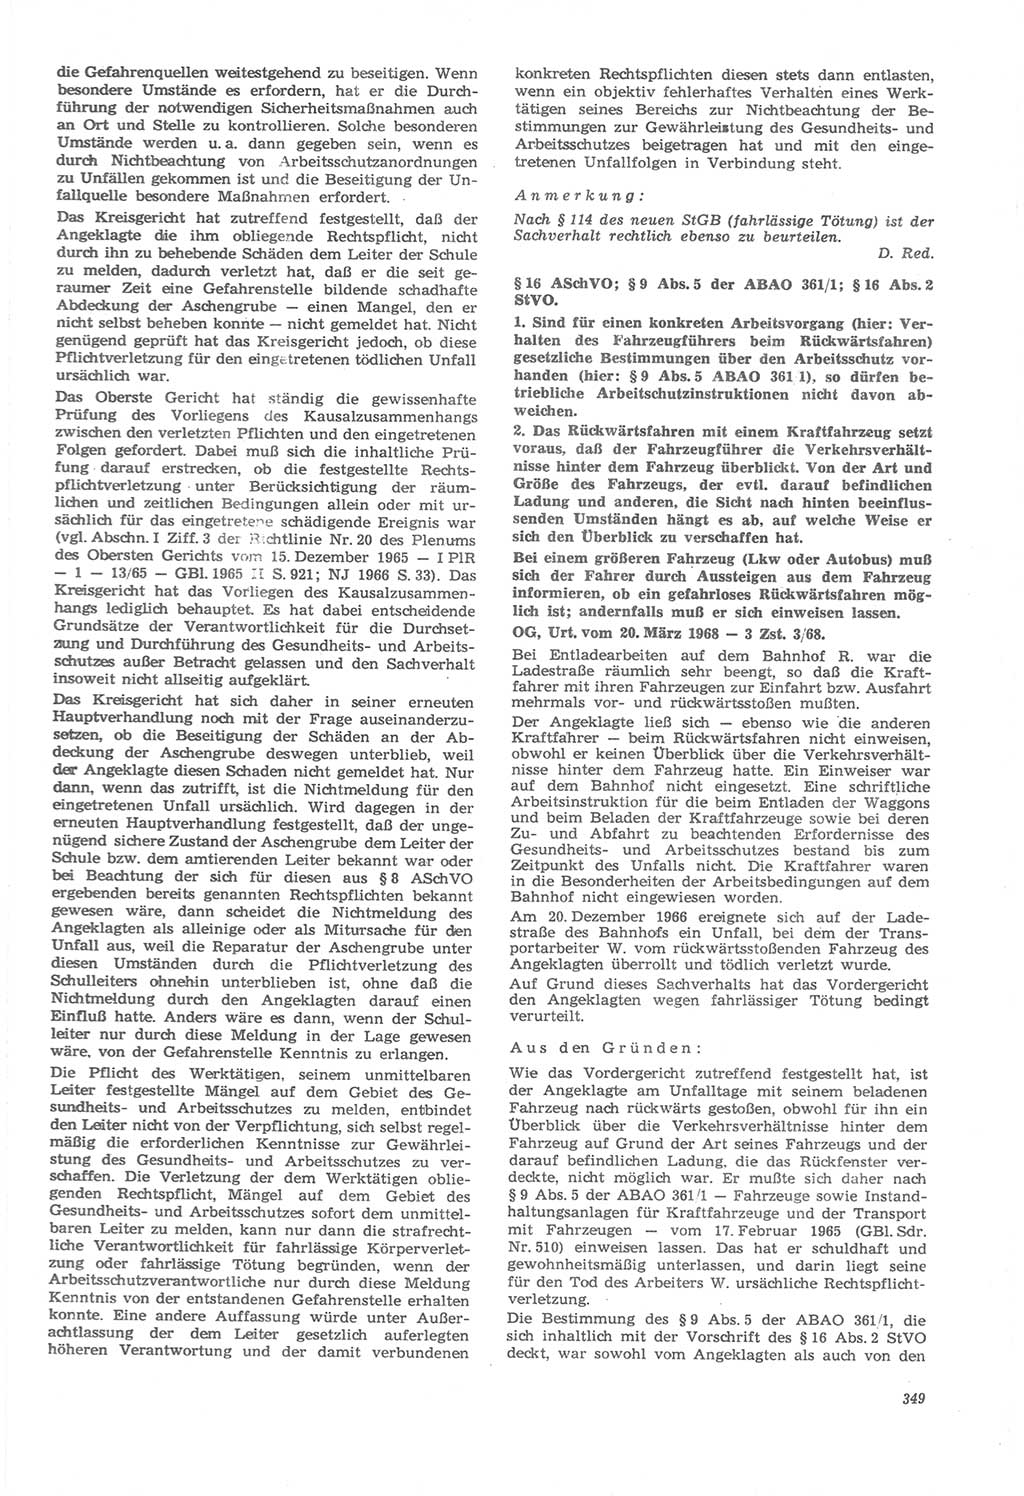 Neue Justiz (NJ), Zeitschrift für Recht und Rechtswissenschaft [Deutsche Demokratische Republik (DDR)], 22. Jahrgang 1968, Seite 349 (NJ DDR 1968, S. 349)